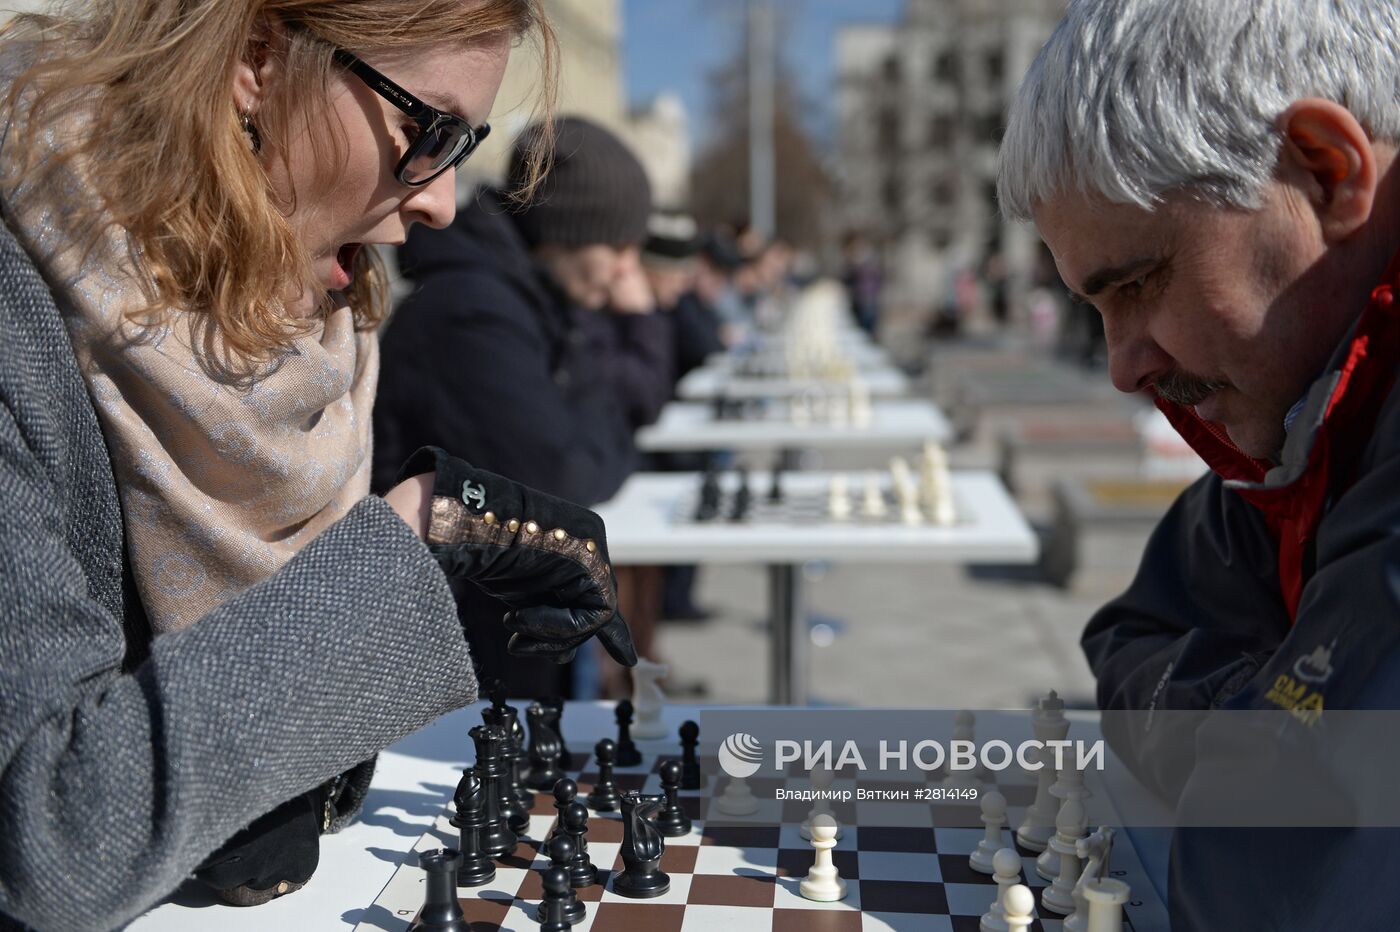 Шахматный фестиваль в Москве